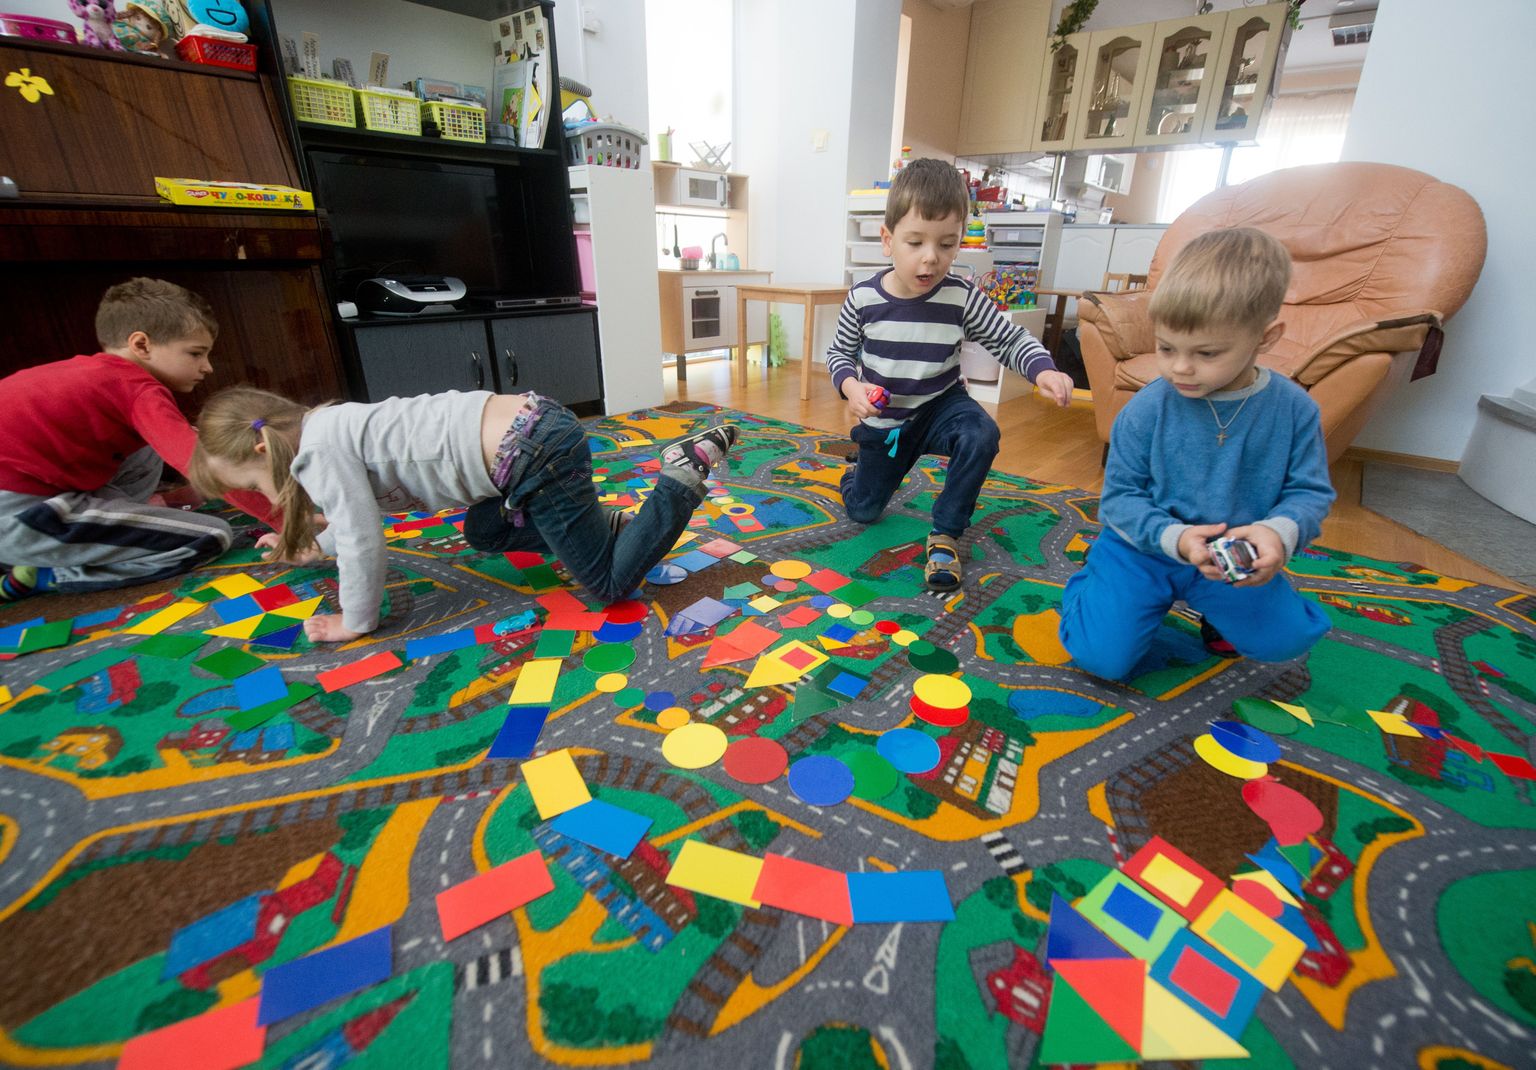 Центр по уходу за детьми на улице Пюй в Таллинне, по словам его руководителя Елены Парфеновой, своей задачей видит, в первую очередь, социальную адаптацию детей.